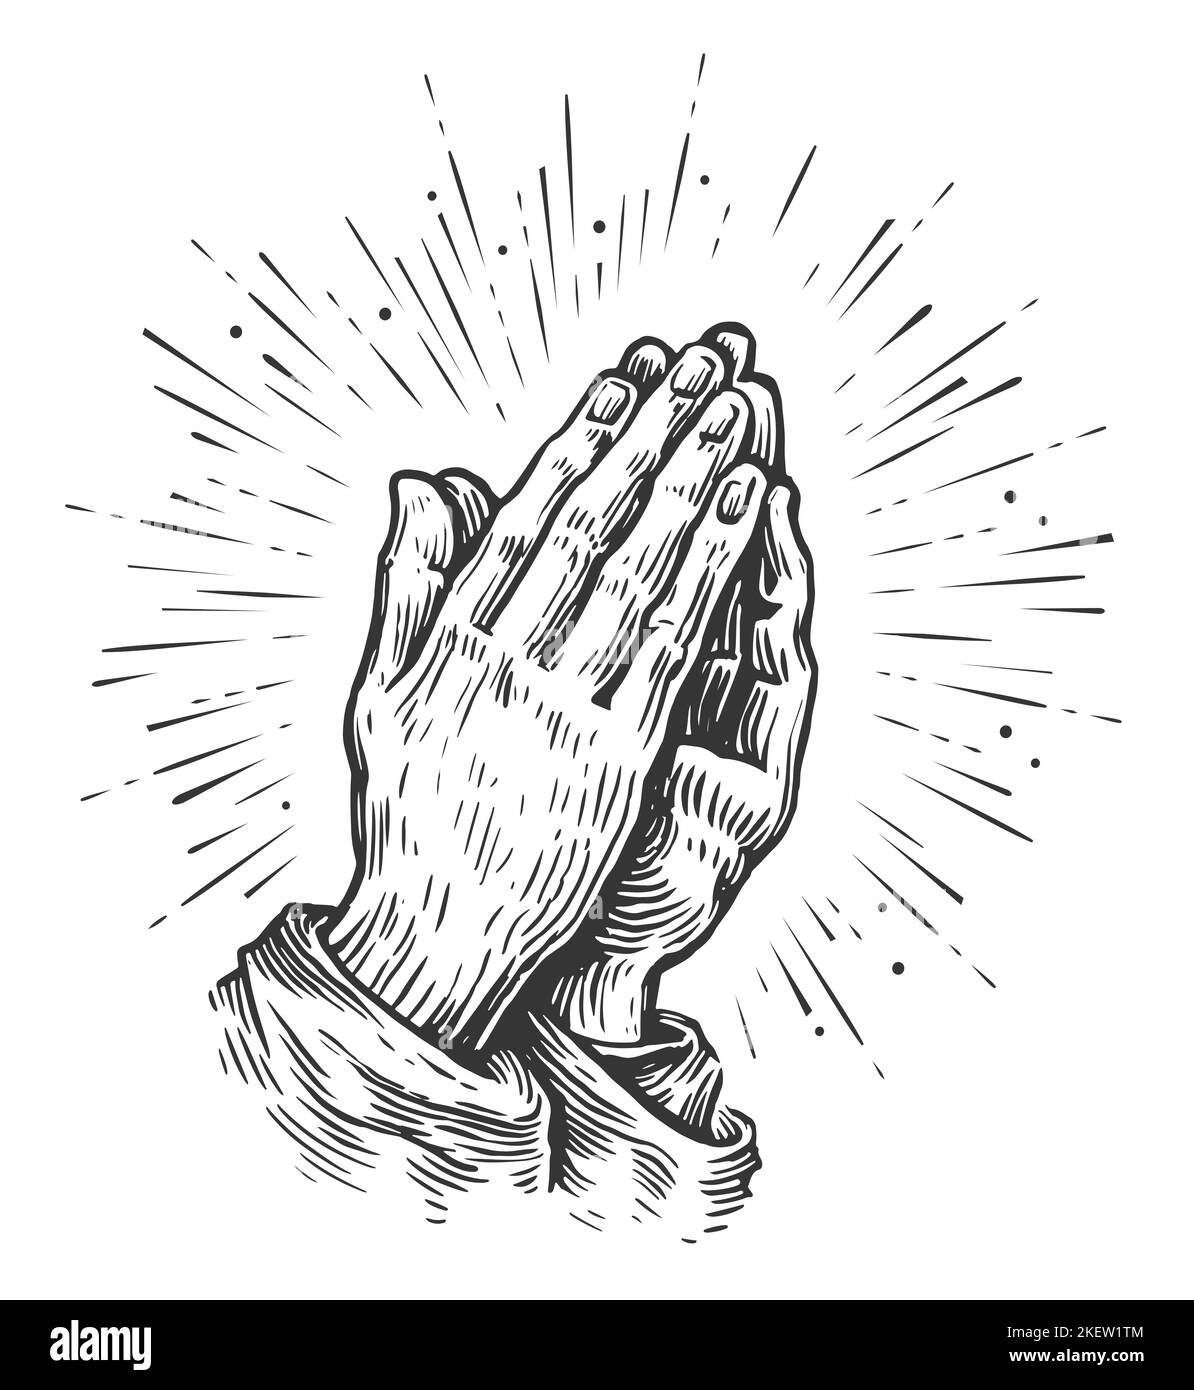 Mani preganti. Mani umane piegate in preghiera in stile d'incisione vintage. Simbolo di preghiera Foto Stock